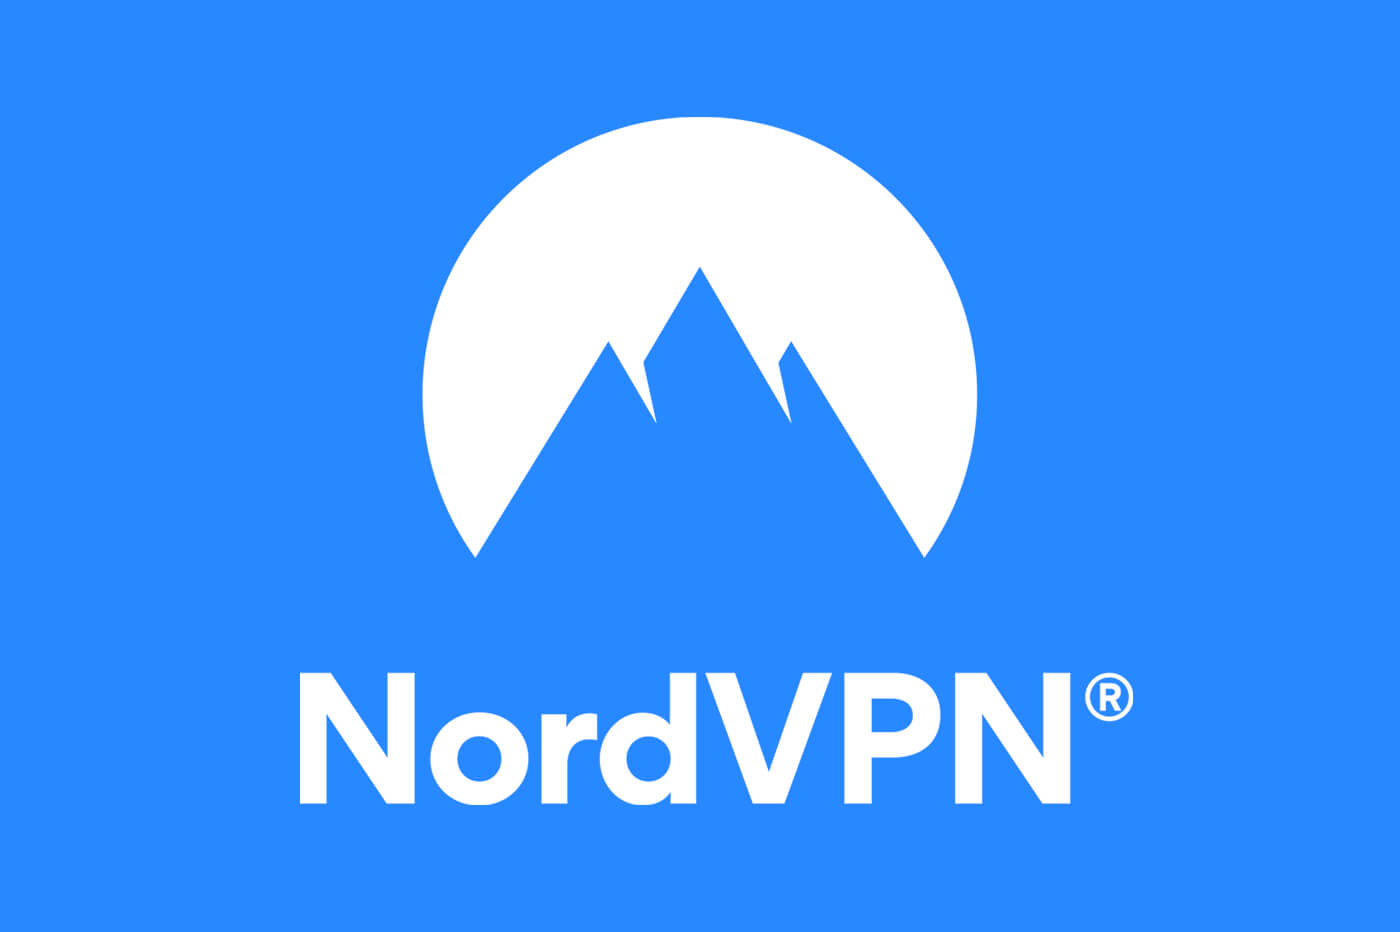 اسم شركة NordVPN وشعارها، قمم الجبال الزرقاء مقابل دائرة بيضاء على خلفية زرقاء.